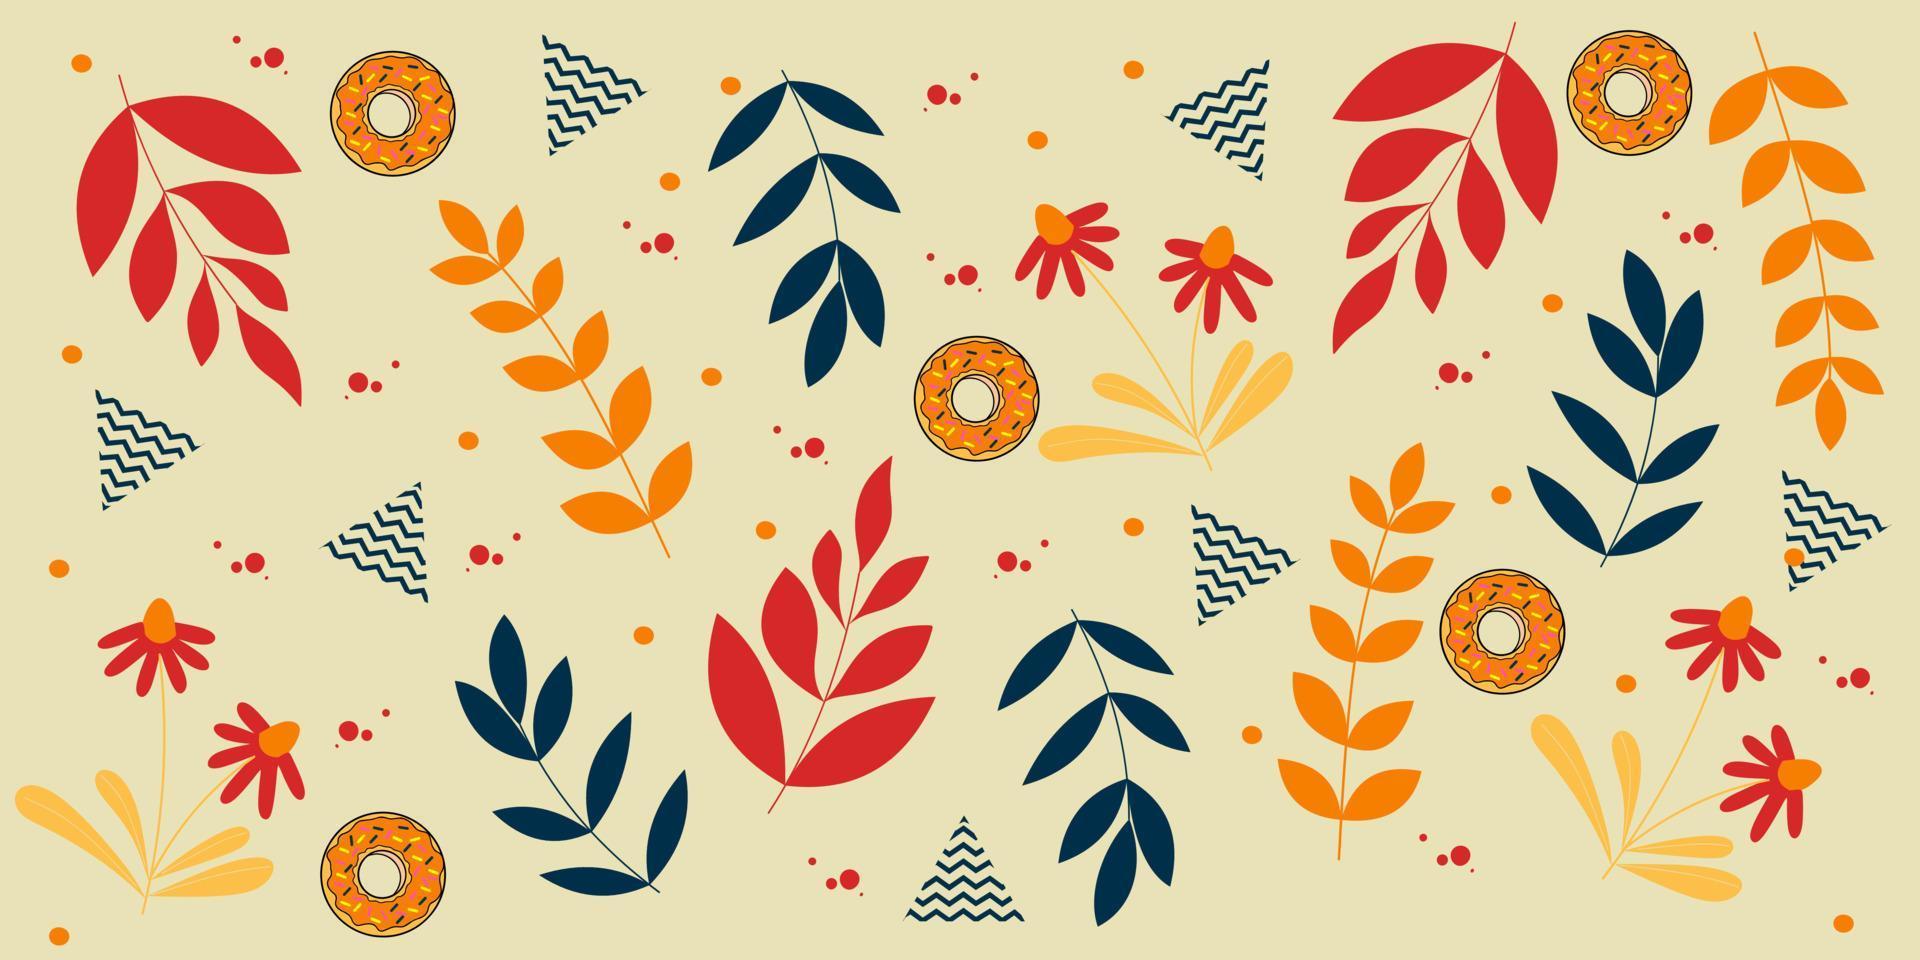 söt tyg mönster design med blomma och blad element.abstrakt bakgrund. illustrationer för kläder, påsar, huvuddukar, strumpor, byxor vektor